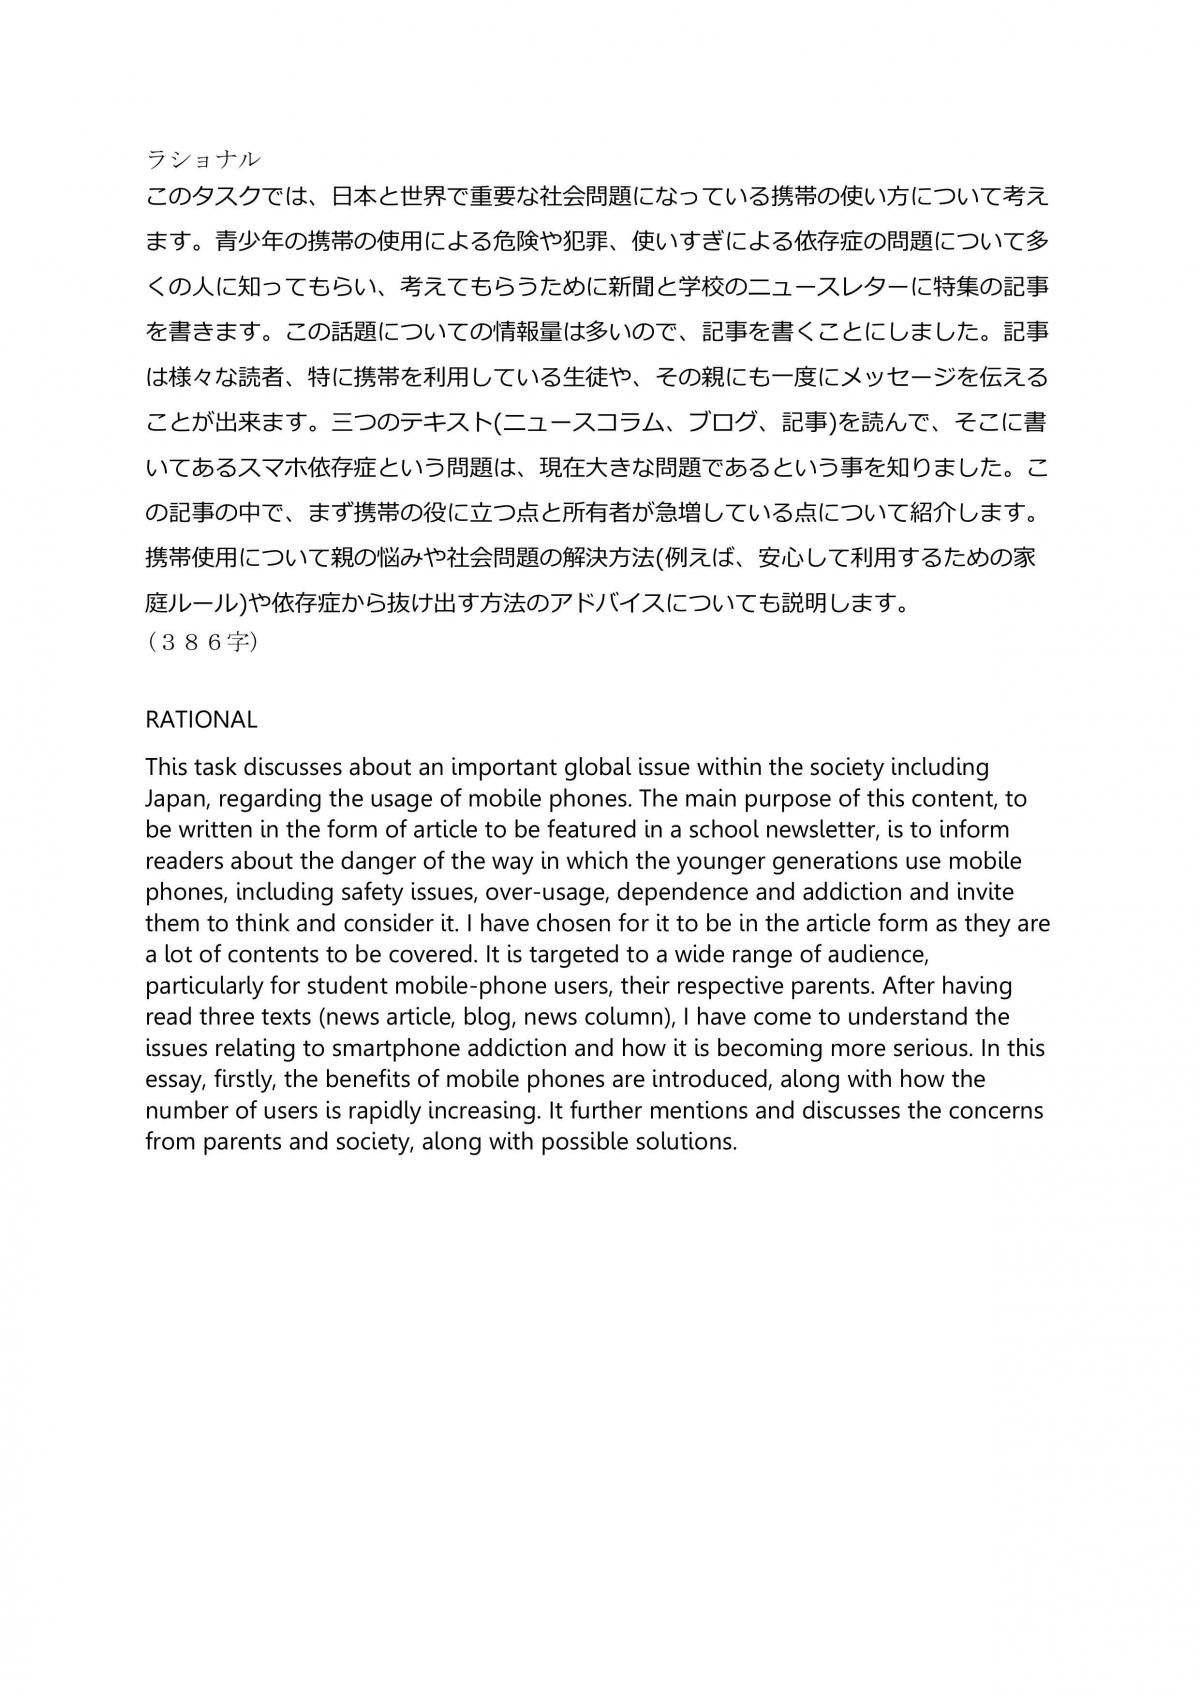 ap japanese essay